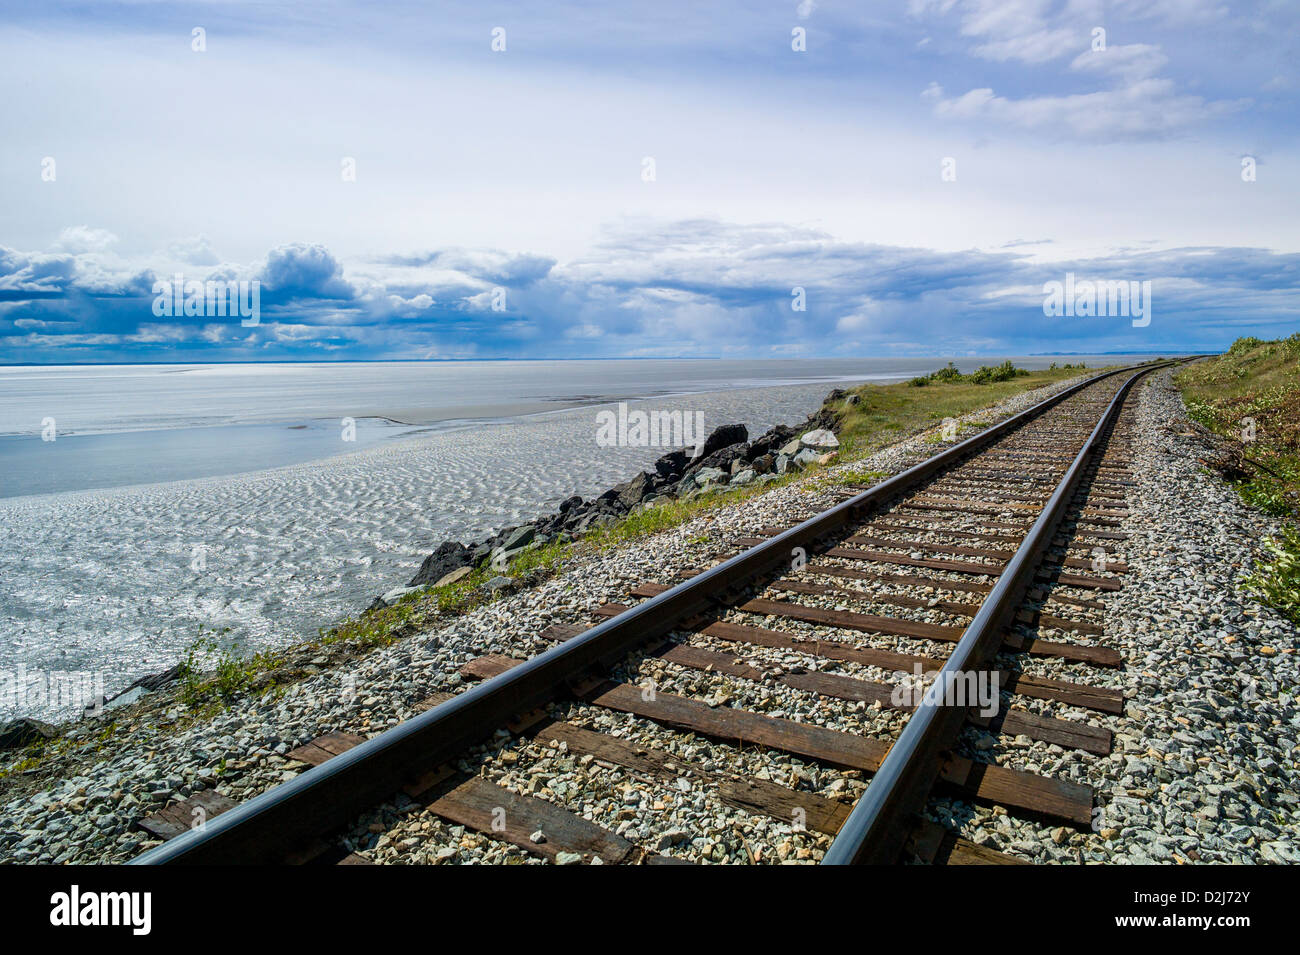 Eisenbahnschienen säumen die zerklüftete Landschaft von Meer und Bergen, Turnagain Arm, südlich von Anchorage, Alaska, USA Stockfoto